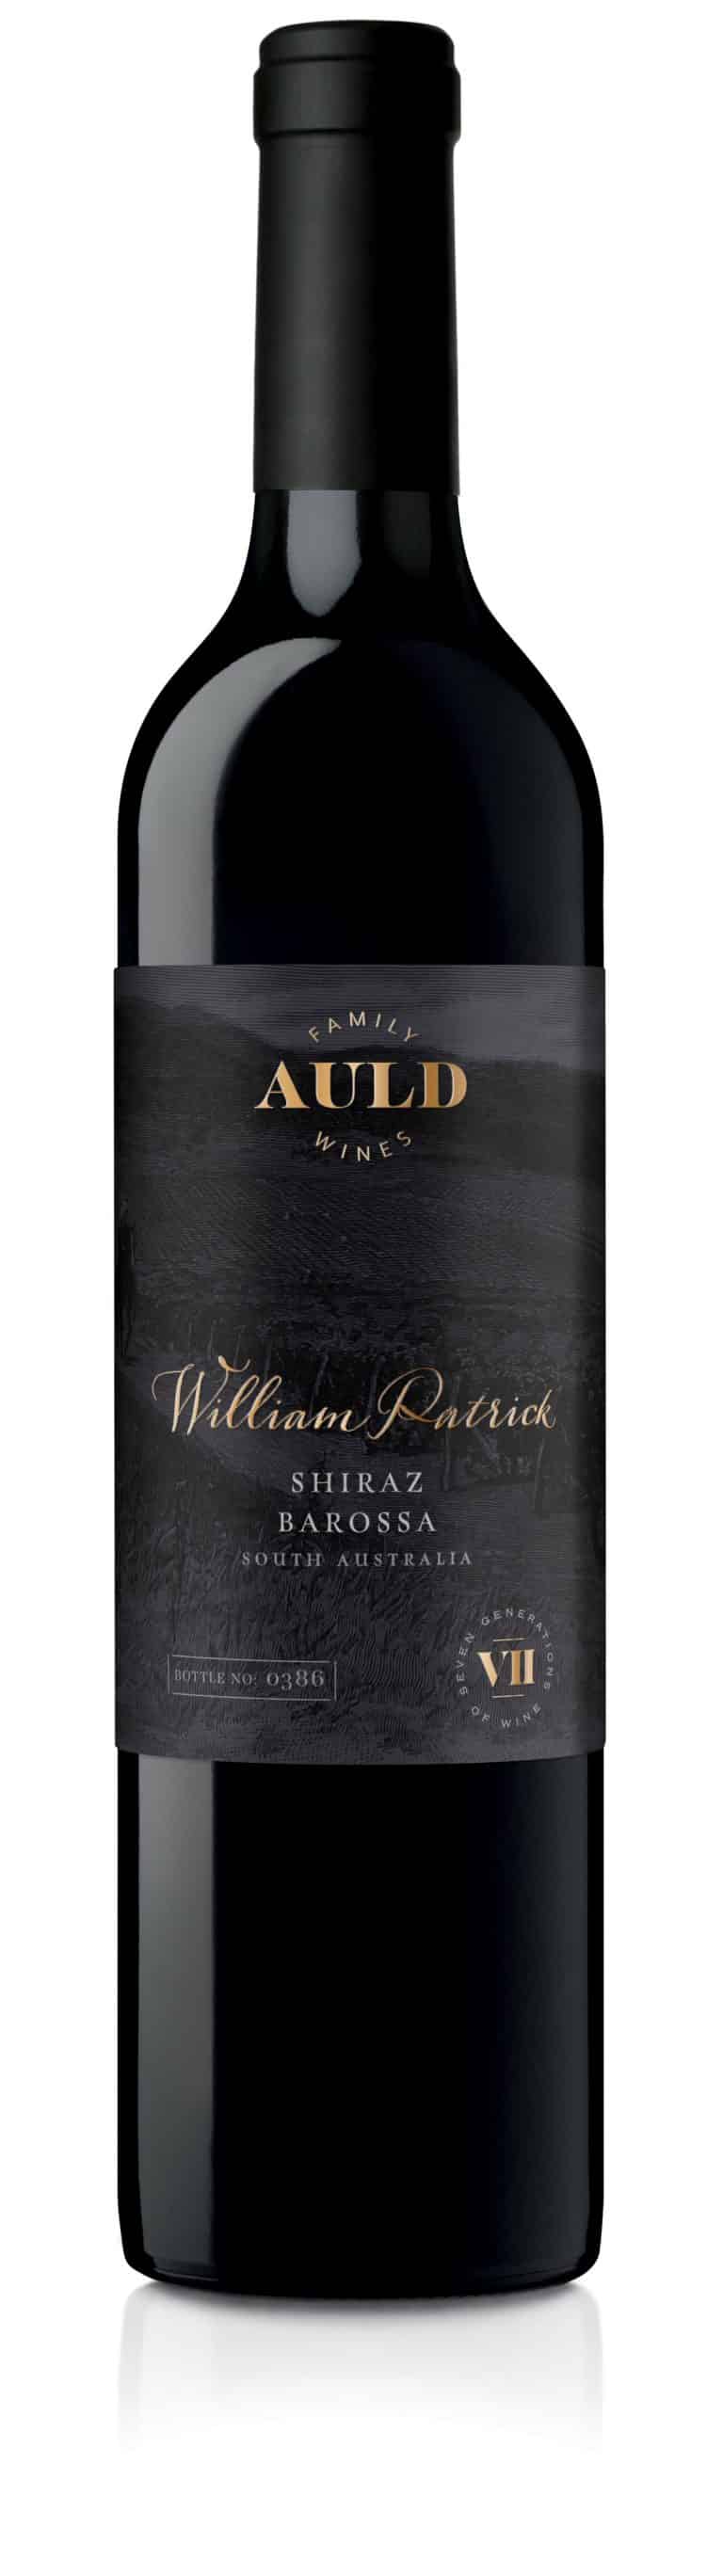 Auld T WP Super Premium Claret bottle vis shiraz under cork